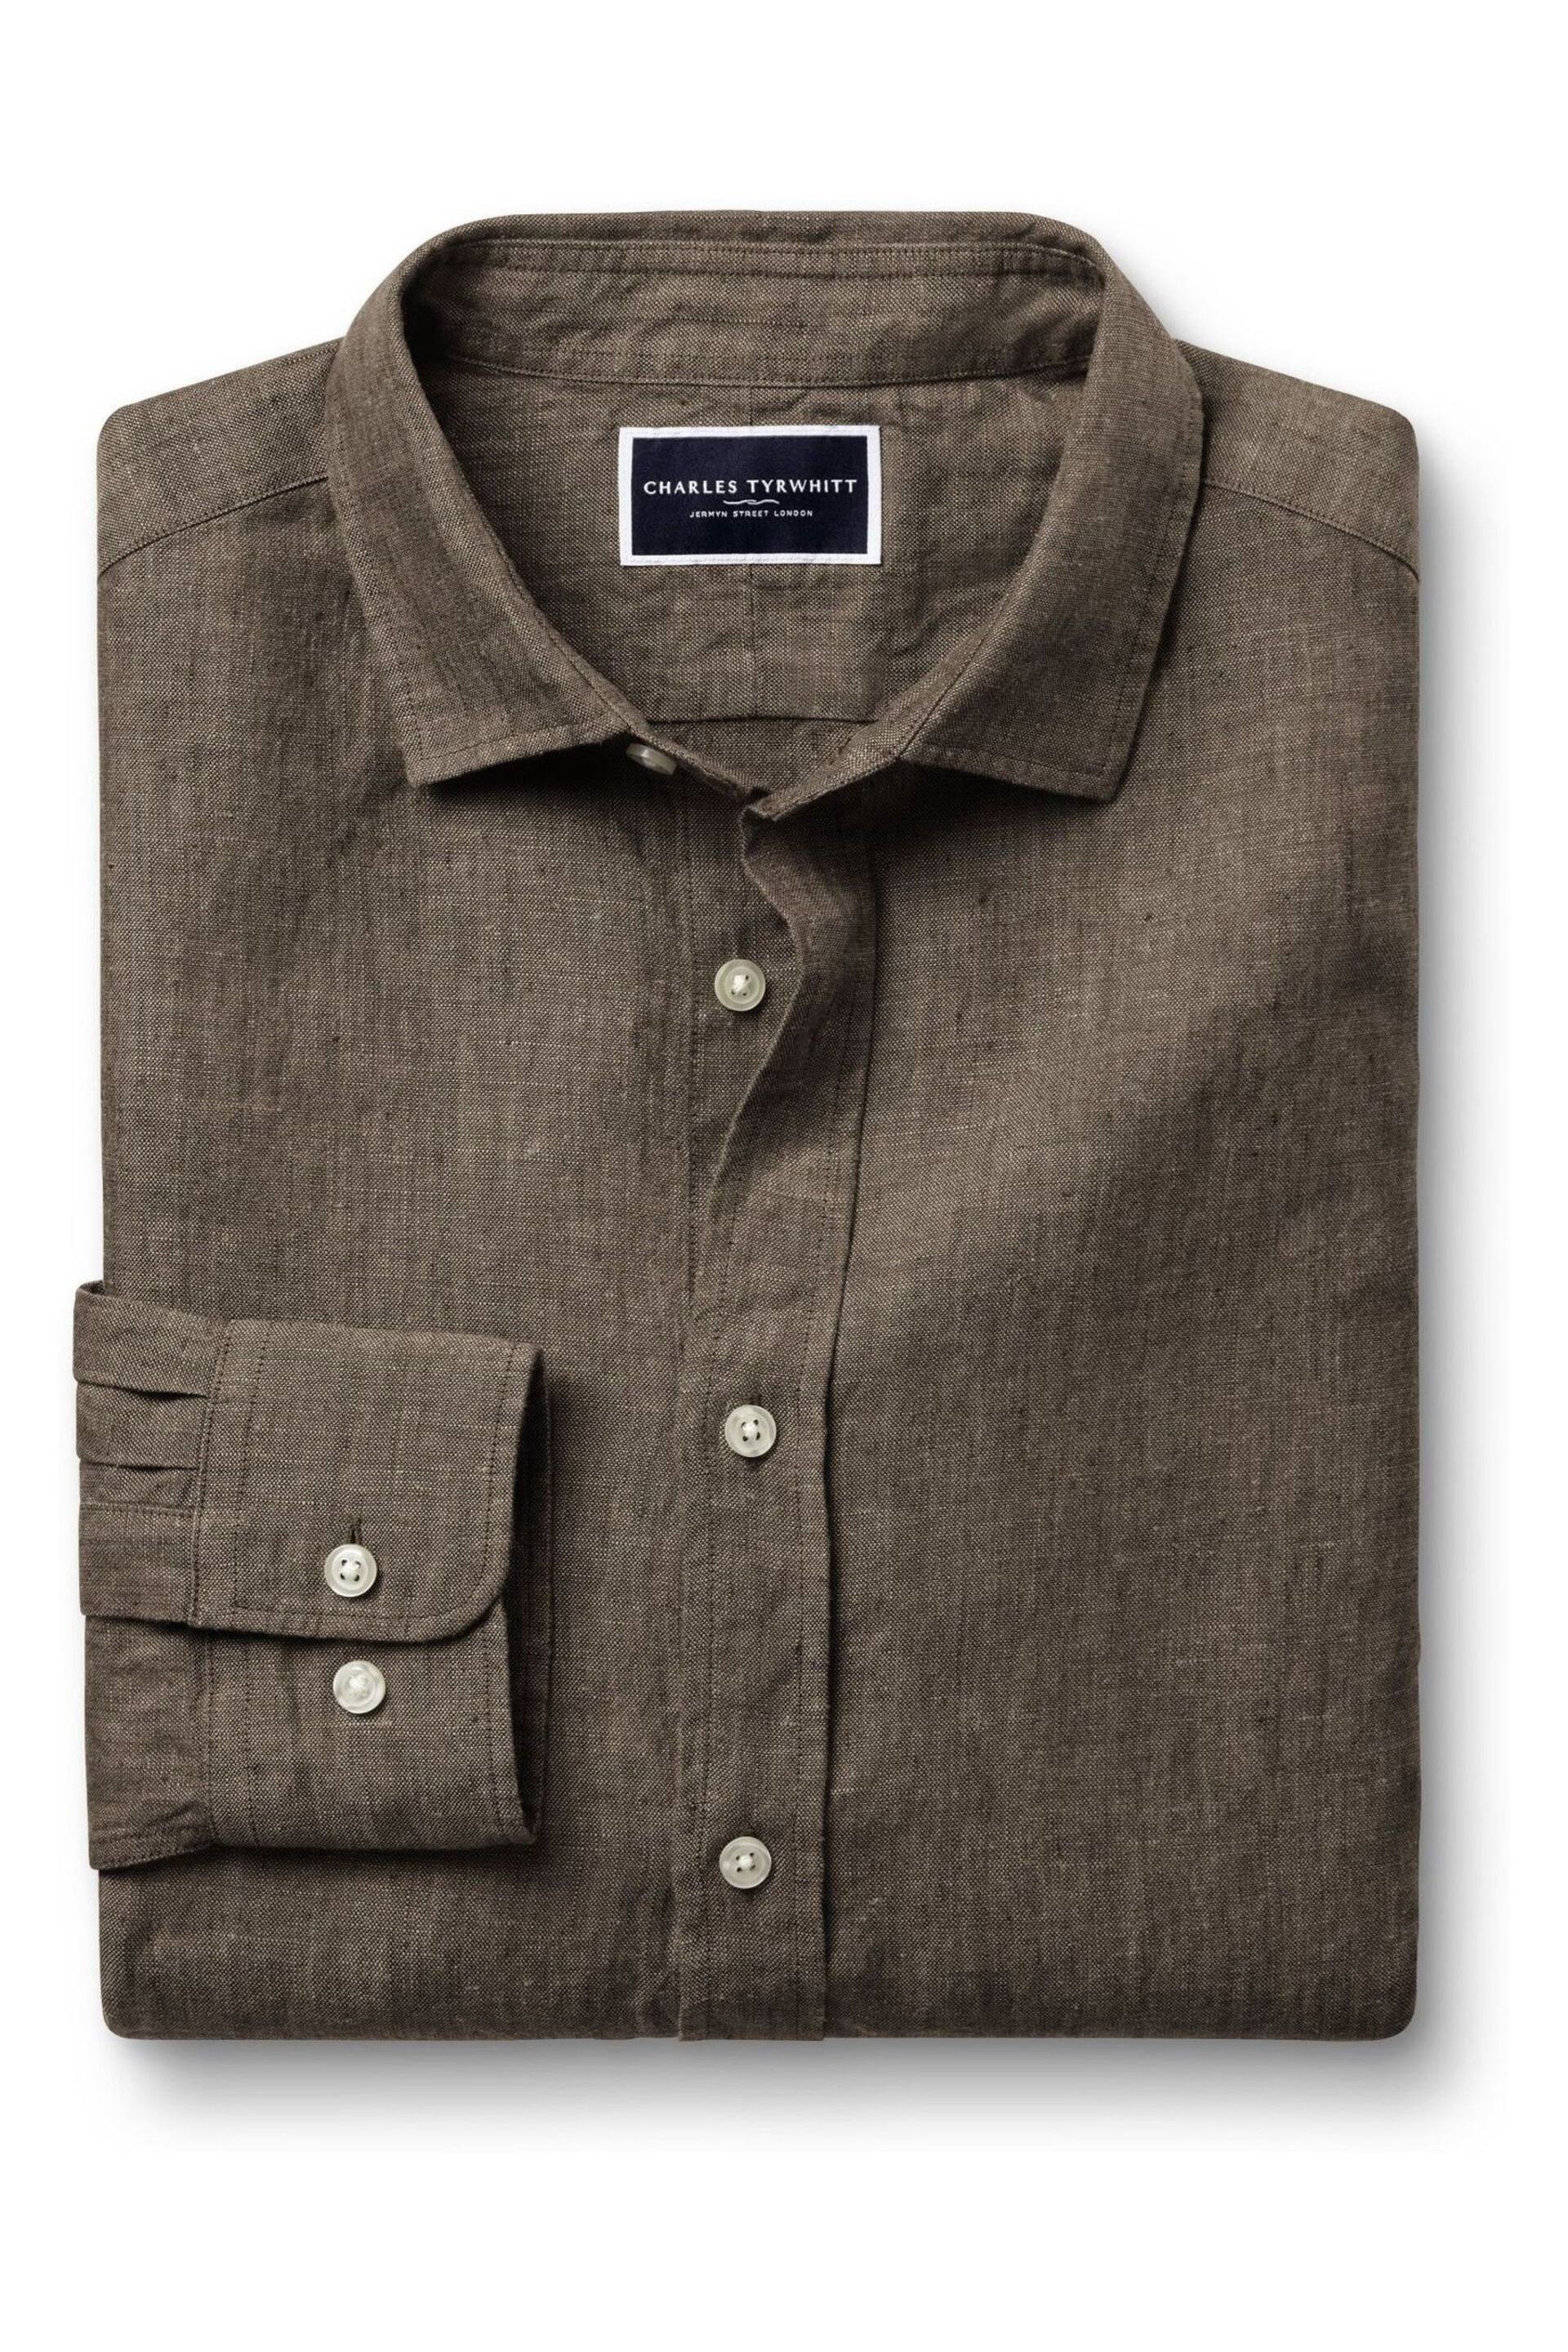 Charles Tyrwhitt Brown Slim Fit Plain Short Sleeve Pure Linen Full Sleeves Shirt - Image 4 of 6